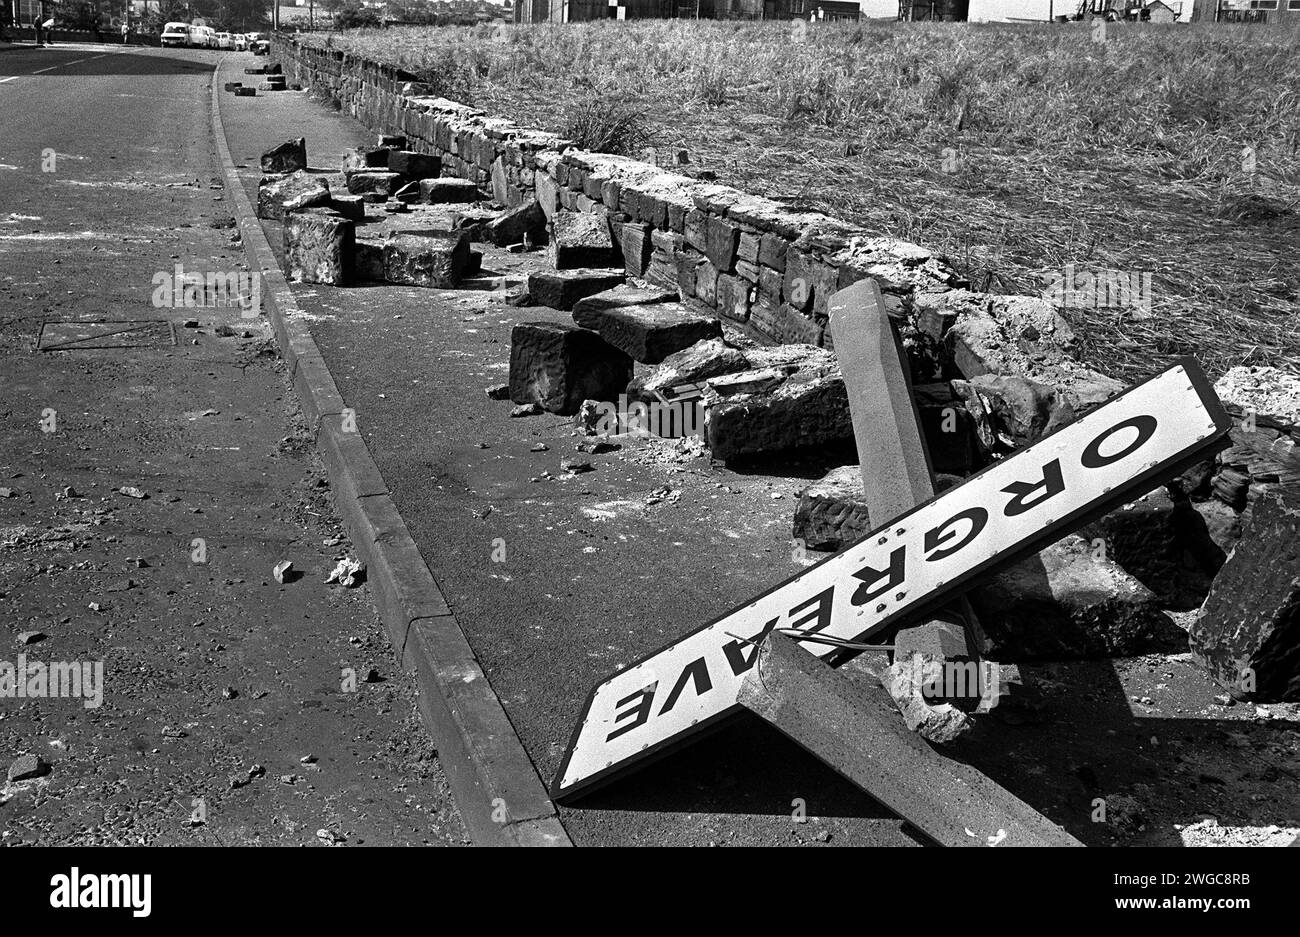 Foto del fascicolo datata 18/06/84 di un segno ritorto, pali di cemento abbattuti e un muro rotto a seguito della violenza all'esterno di una cokeria a Orgreave, South Yorkshire. Le richieste di un'indagine pubblica sugli eventi di uno dei giorni più violenti dello sciopero dei minatori durato un anno vengono intensificate a seguito di nuove riprese in TV di scontri tra polizia e picchetti. Il violento scontro del giugno 1984 all'esterno di una cokeria a Orgreave, nello Yorkshire, portò molti minatori ad essere feriti e arrestati, anche se i loro processi in seguito crollarono. Un documentario in tre parti su Channel 4 sullo sciopero dei minatori si è concentrato sulla so-calle Foto Stock